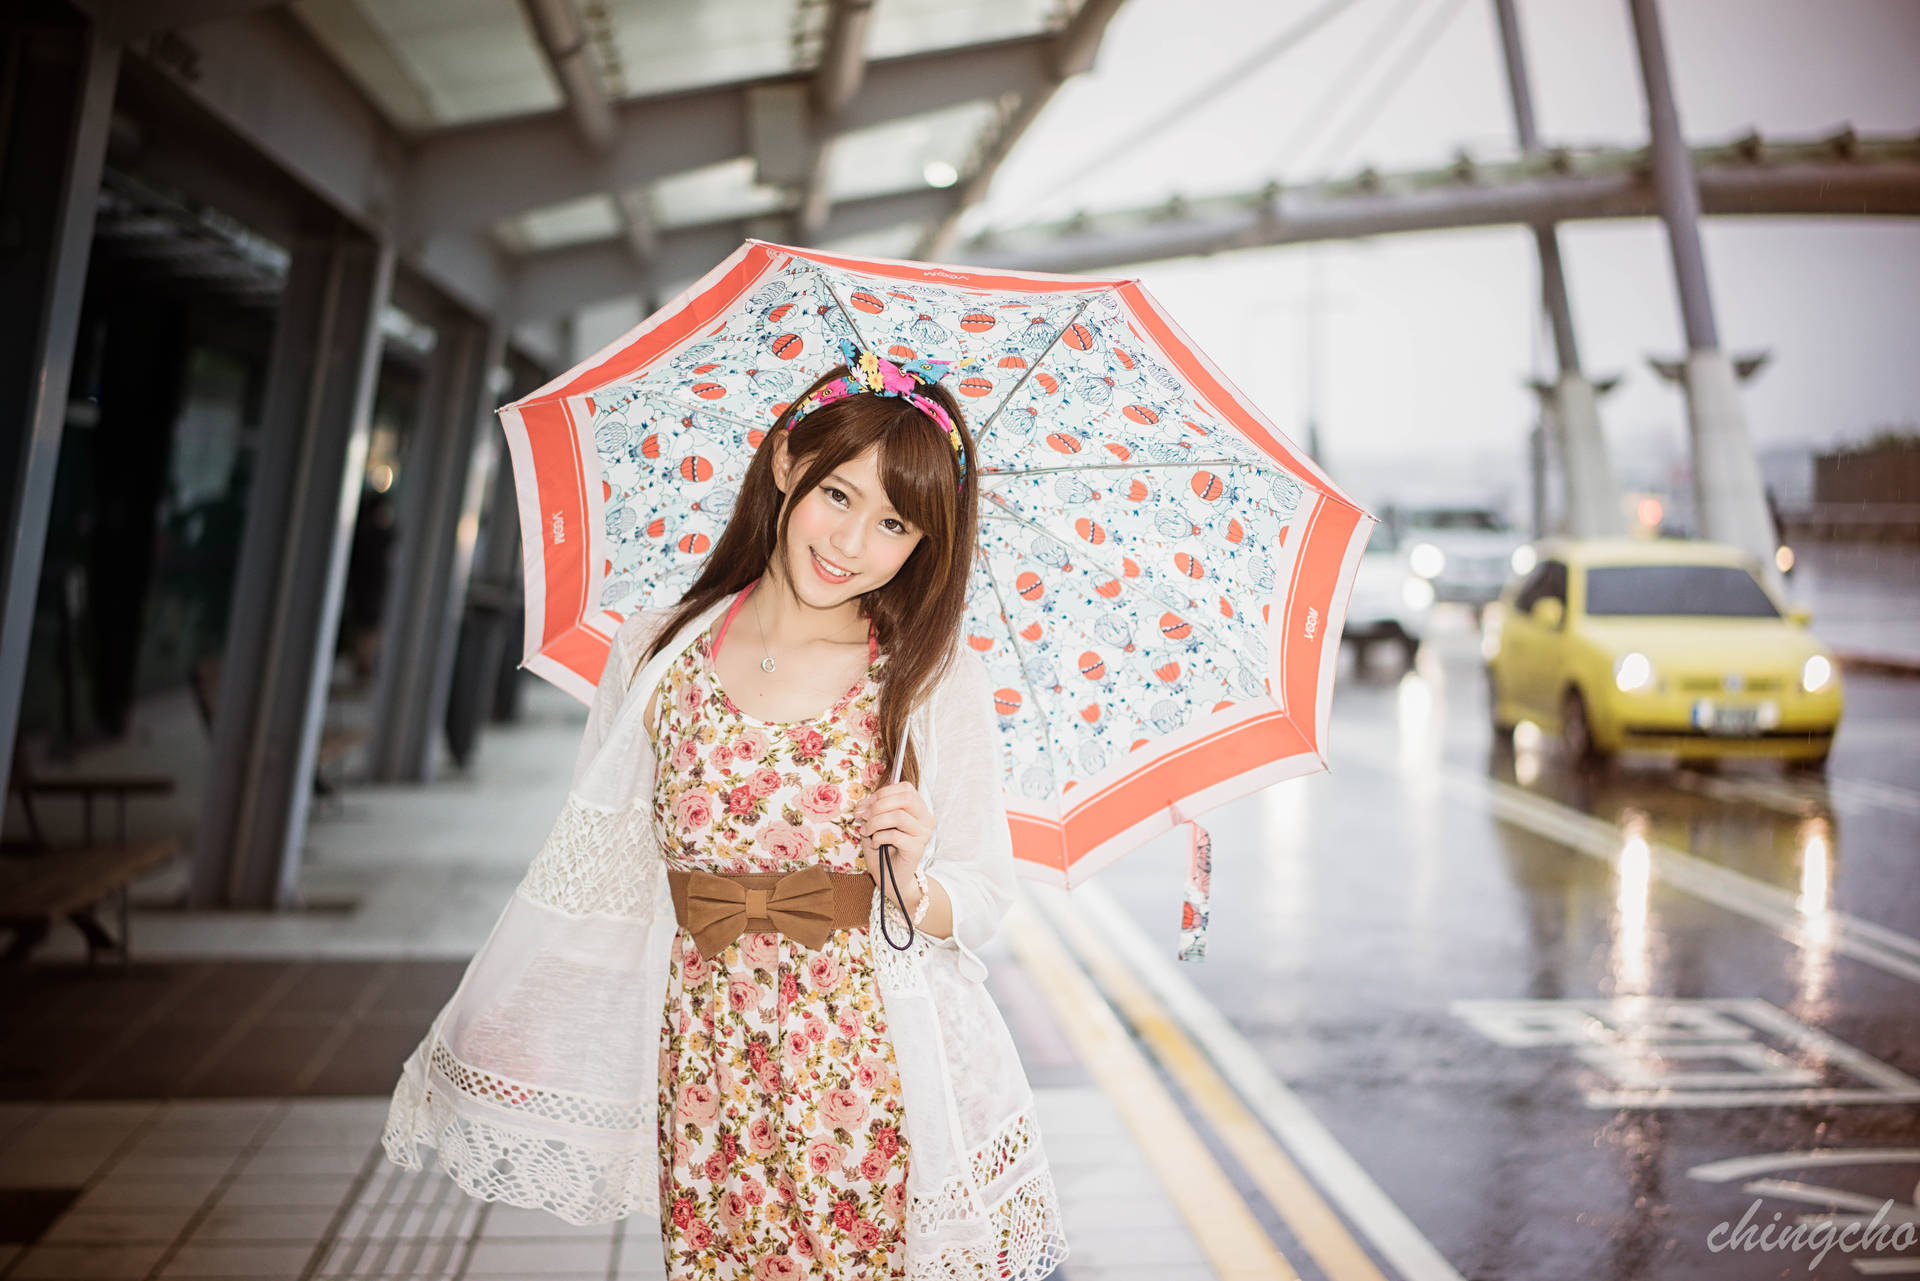 Kinesisk kvinde på lufthavn med multicolored paraply Wallpaper